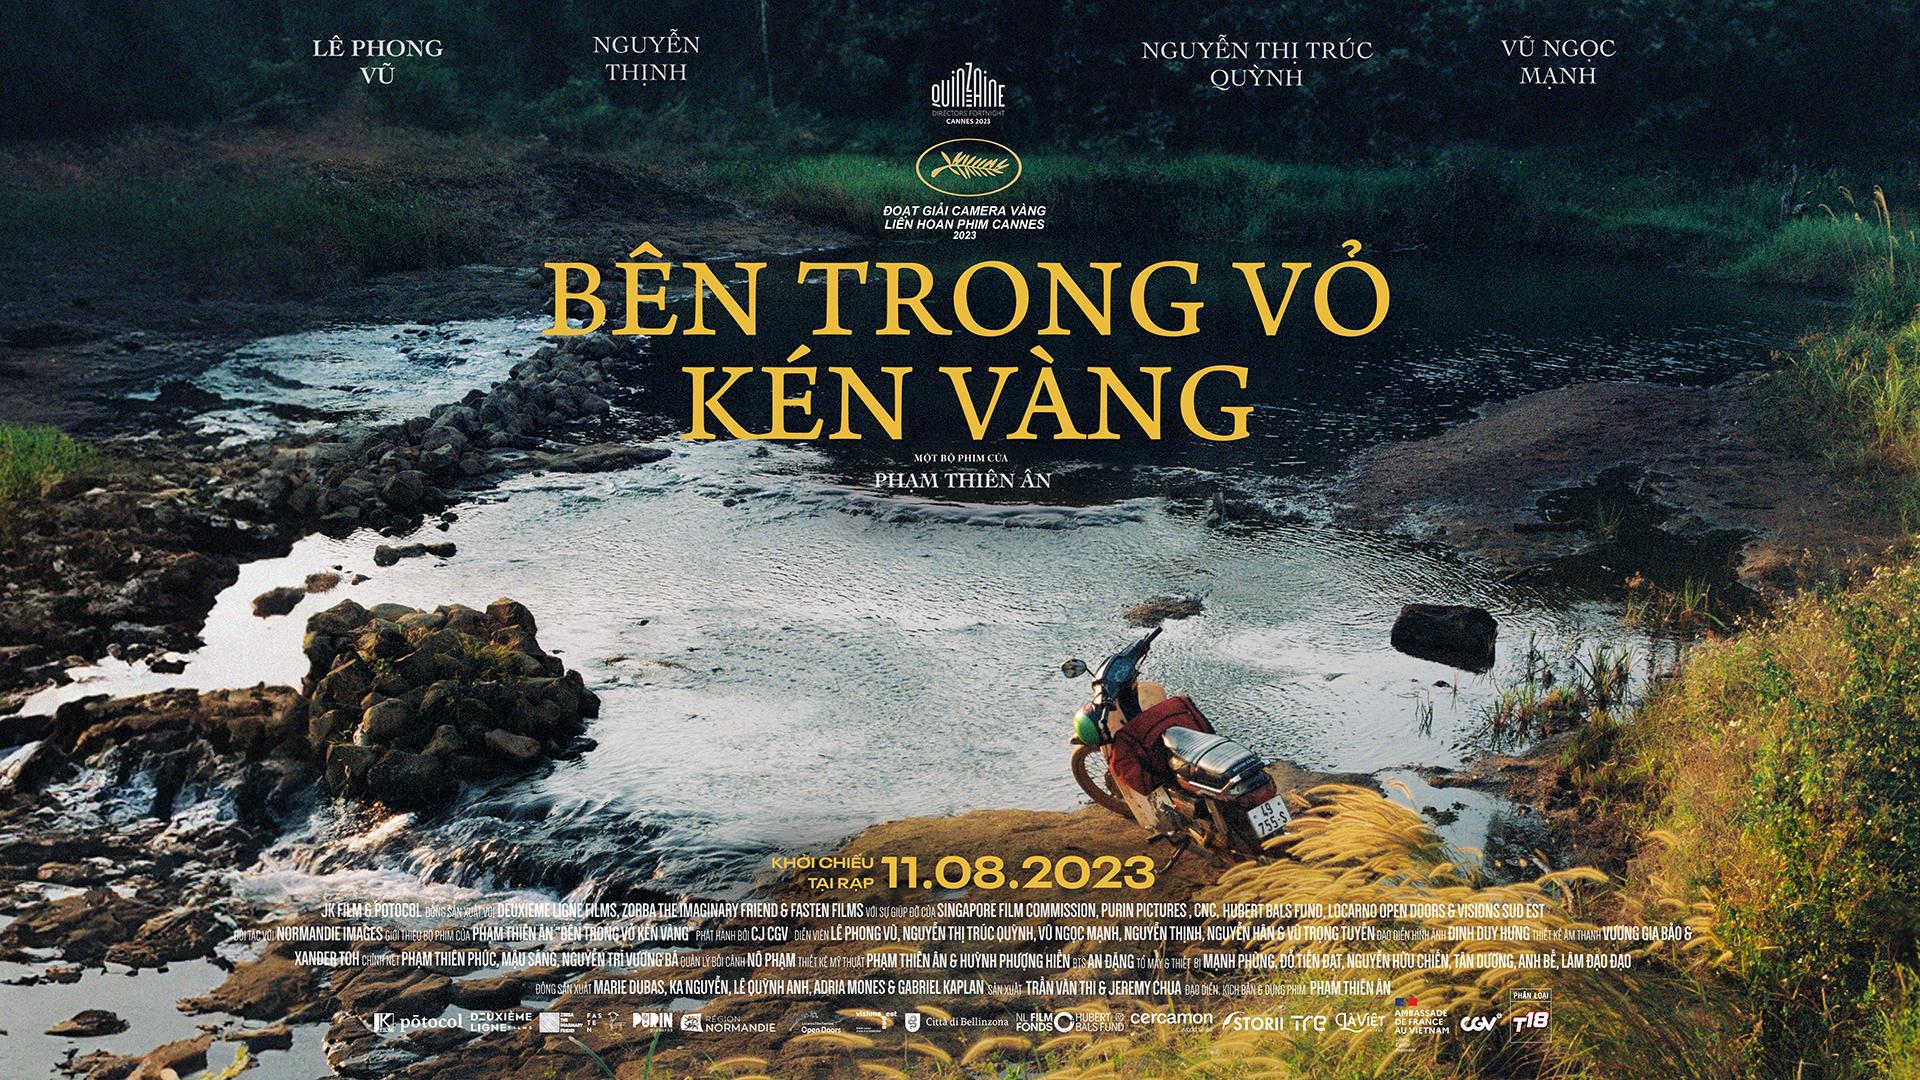 Nhìn “Bên trong vỏ kén vàng”, thấy một thế hệ mới của điện ảnh Việt - Ảnh 5.